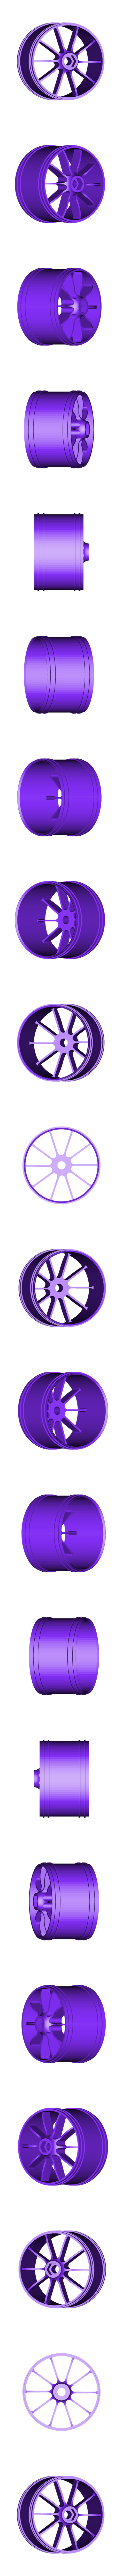 rear_rim_for_rubber_tire.stl Download free STL file 2016 Ducati Draxter Concept Drag Bike RC • 3D printer model, brett